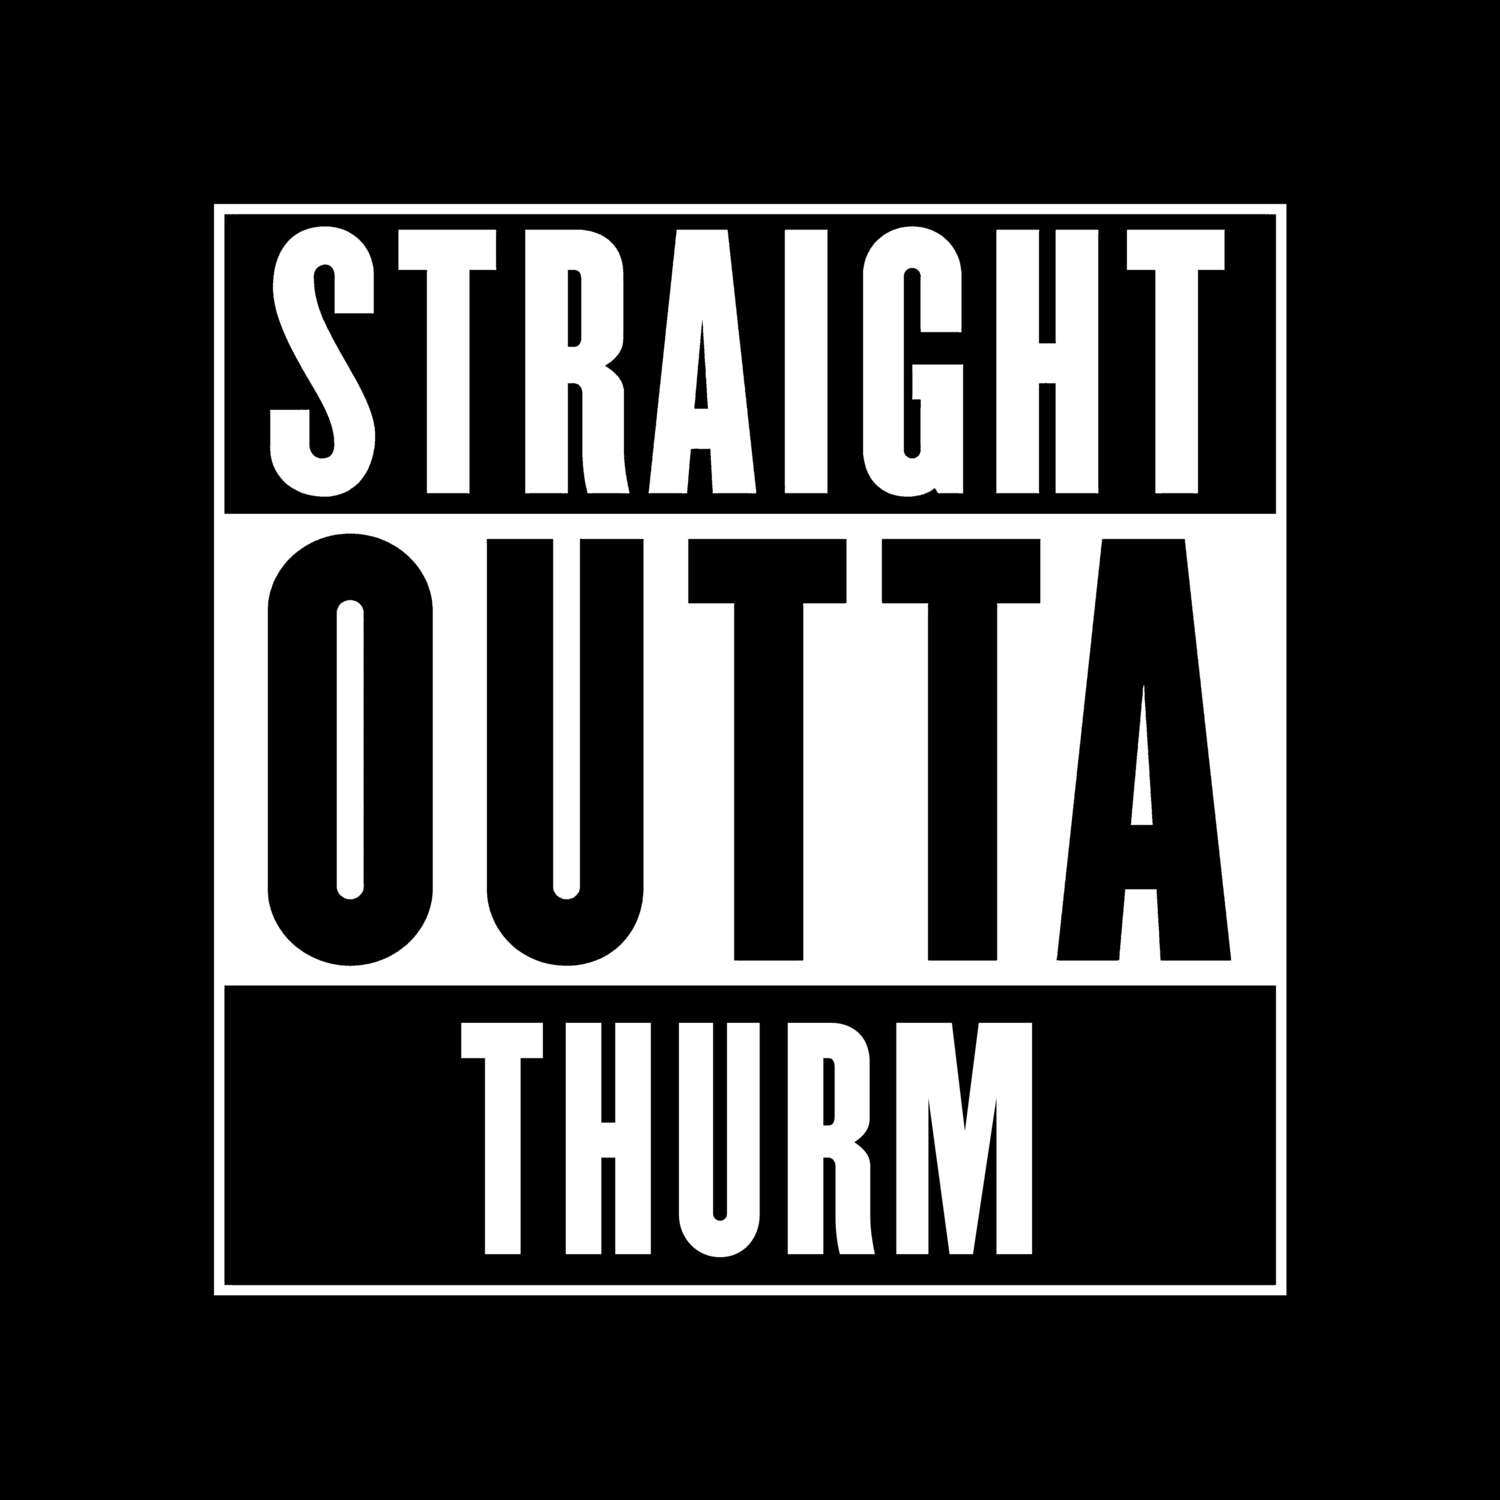 Thurm T-Shirt »Straight Outta«